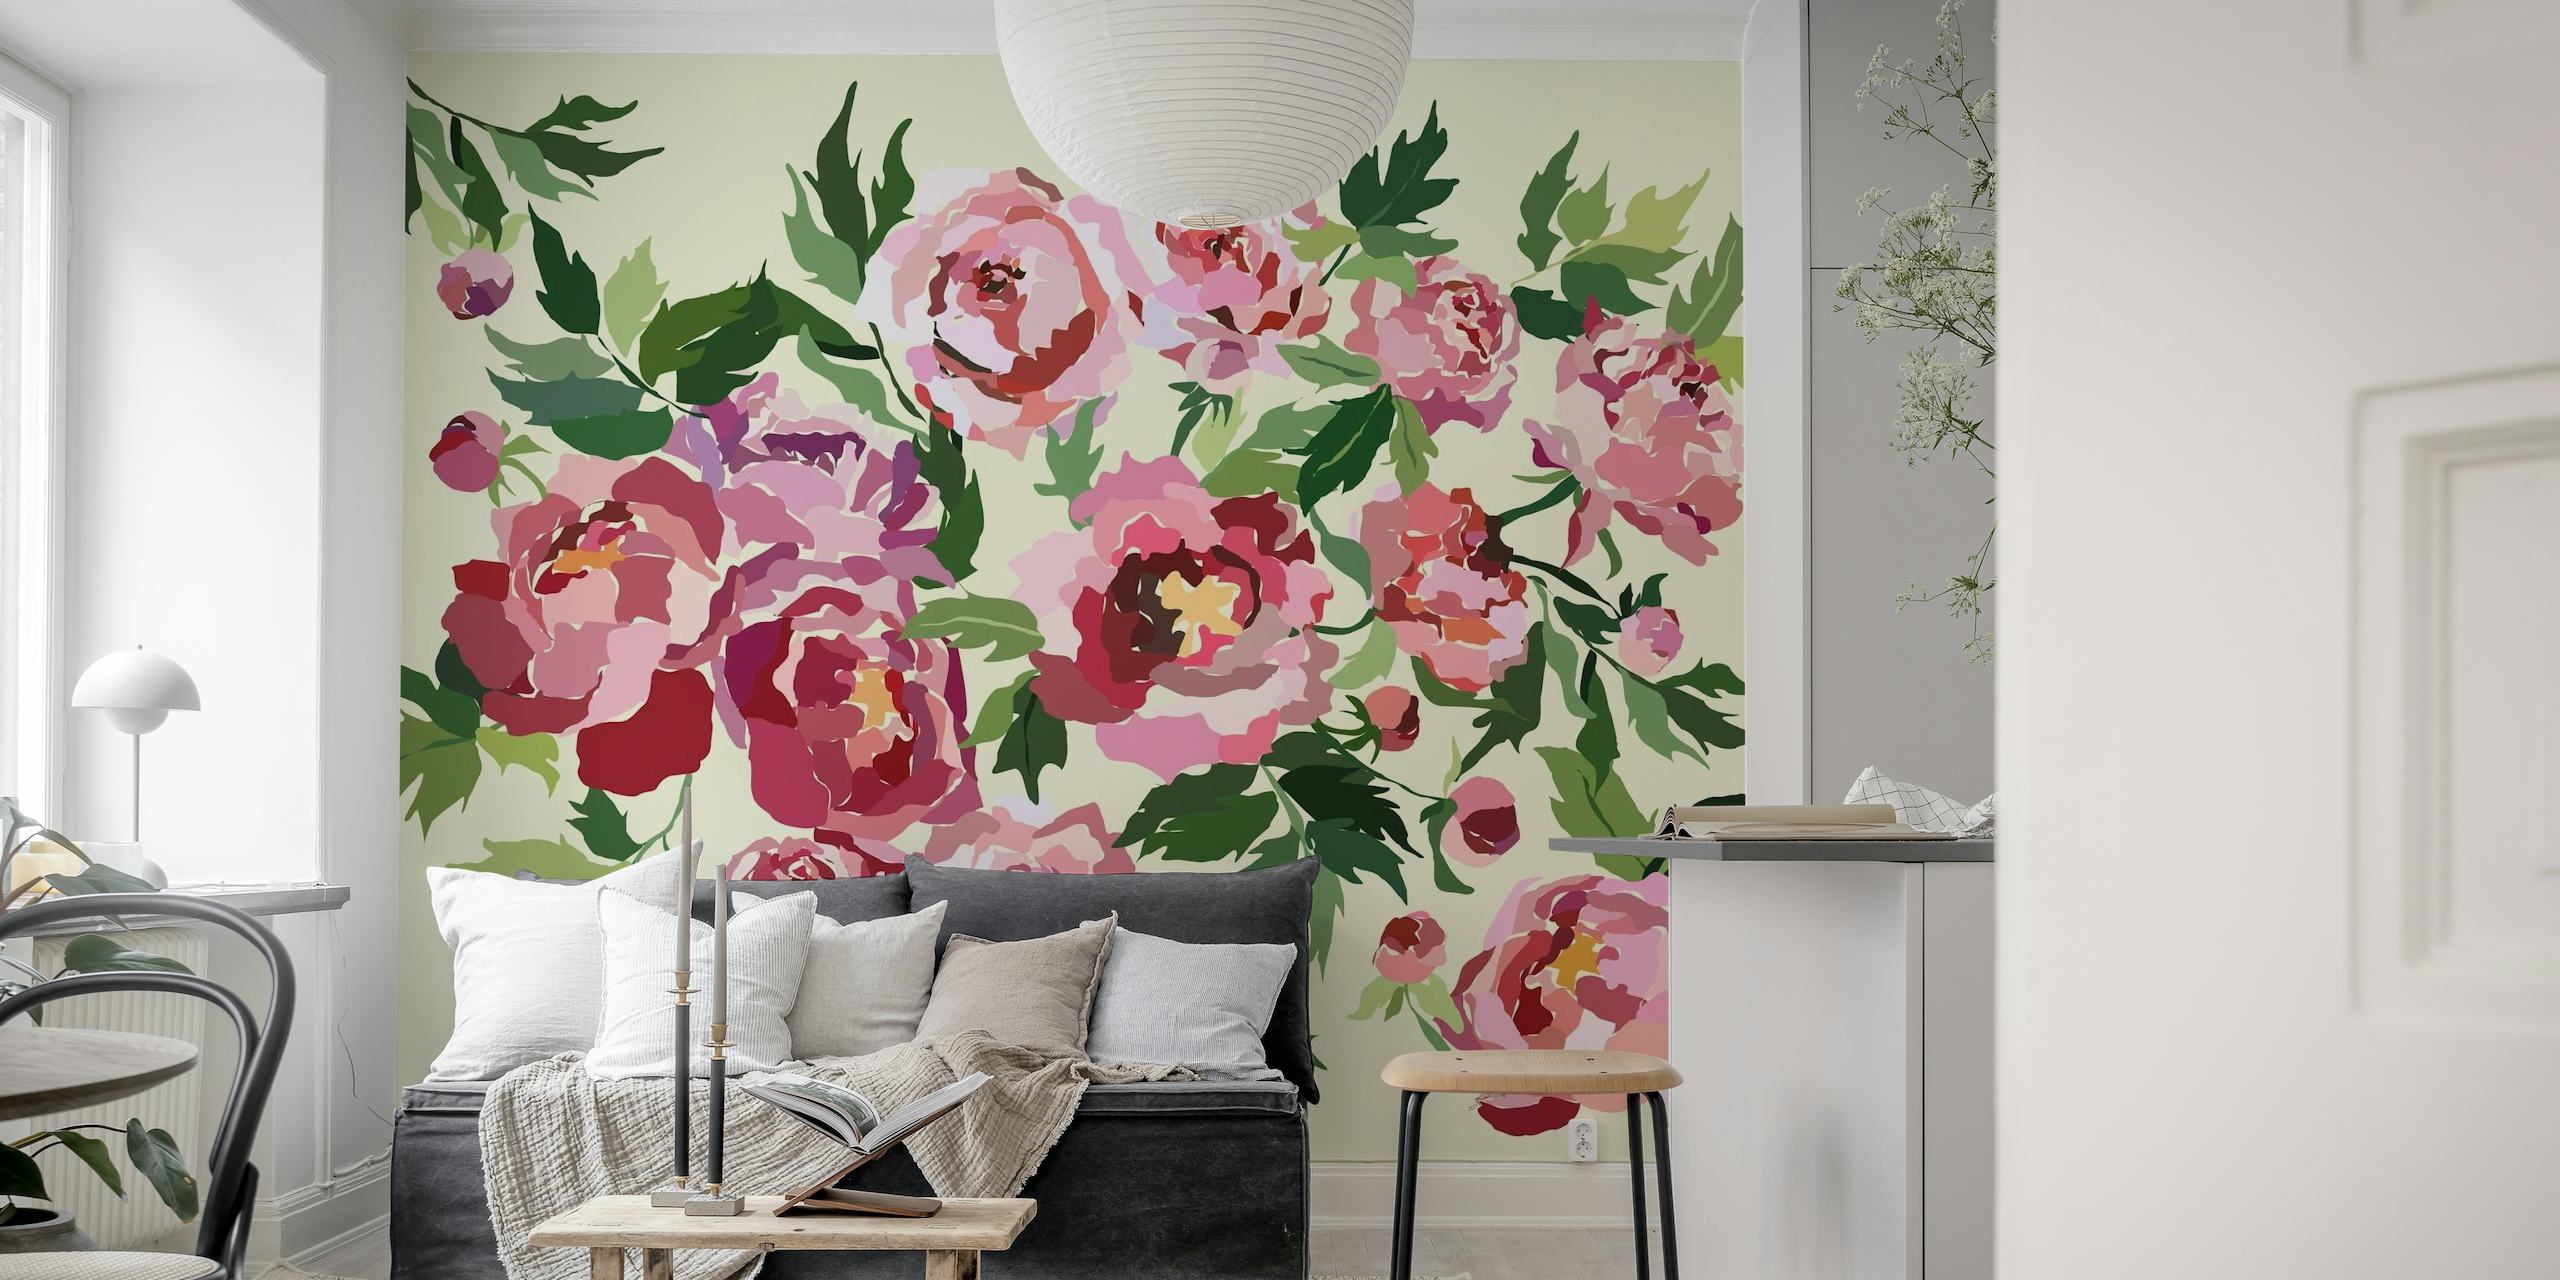 Pioenrozen in roze en bordeauxrood op een lichtgrijze muurschildering als achtergrond